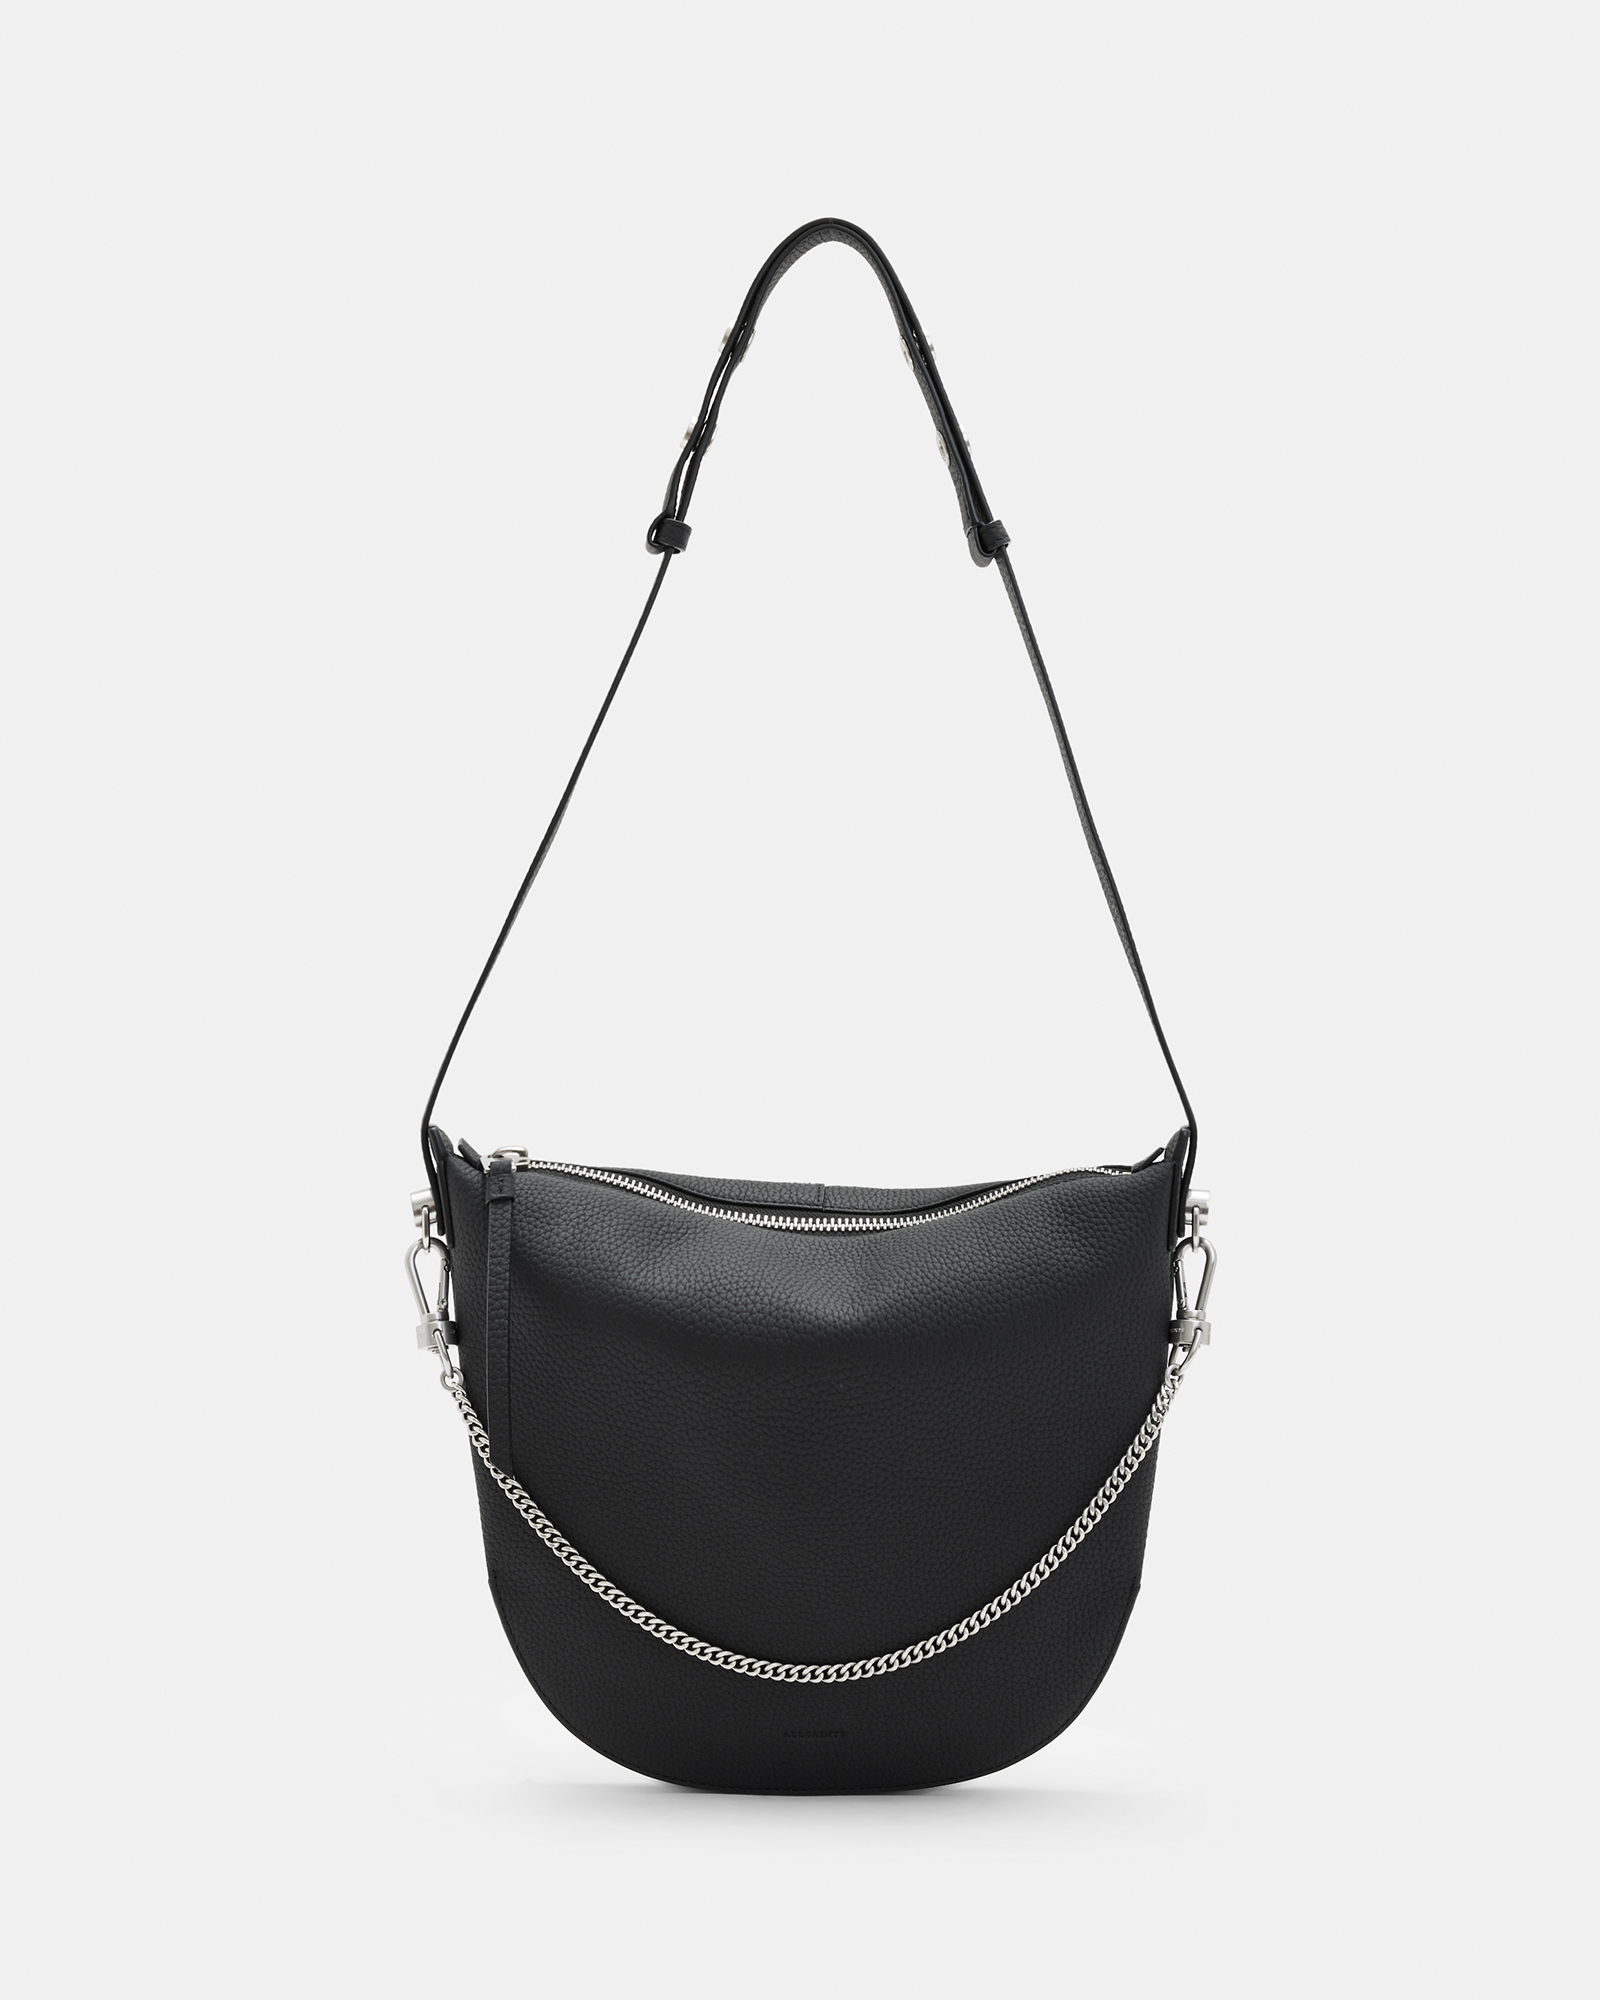 Blake Leather Shoulder Bag Black | ALLSAINTS US